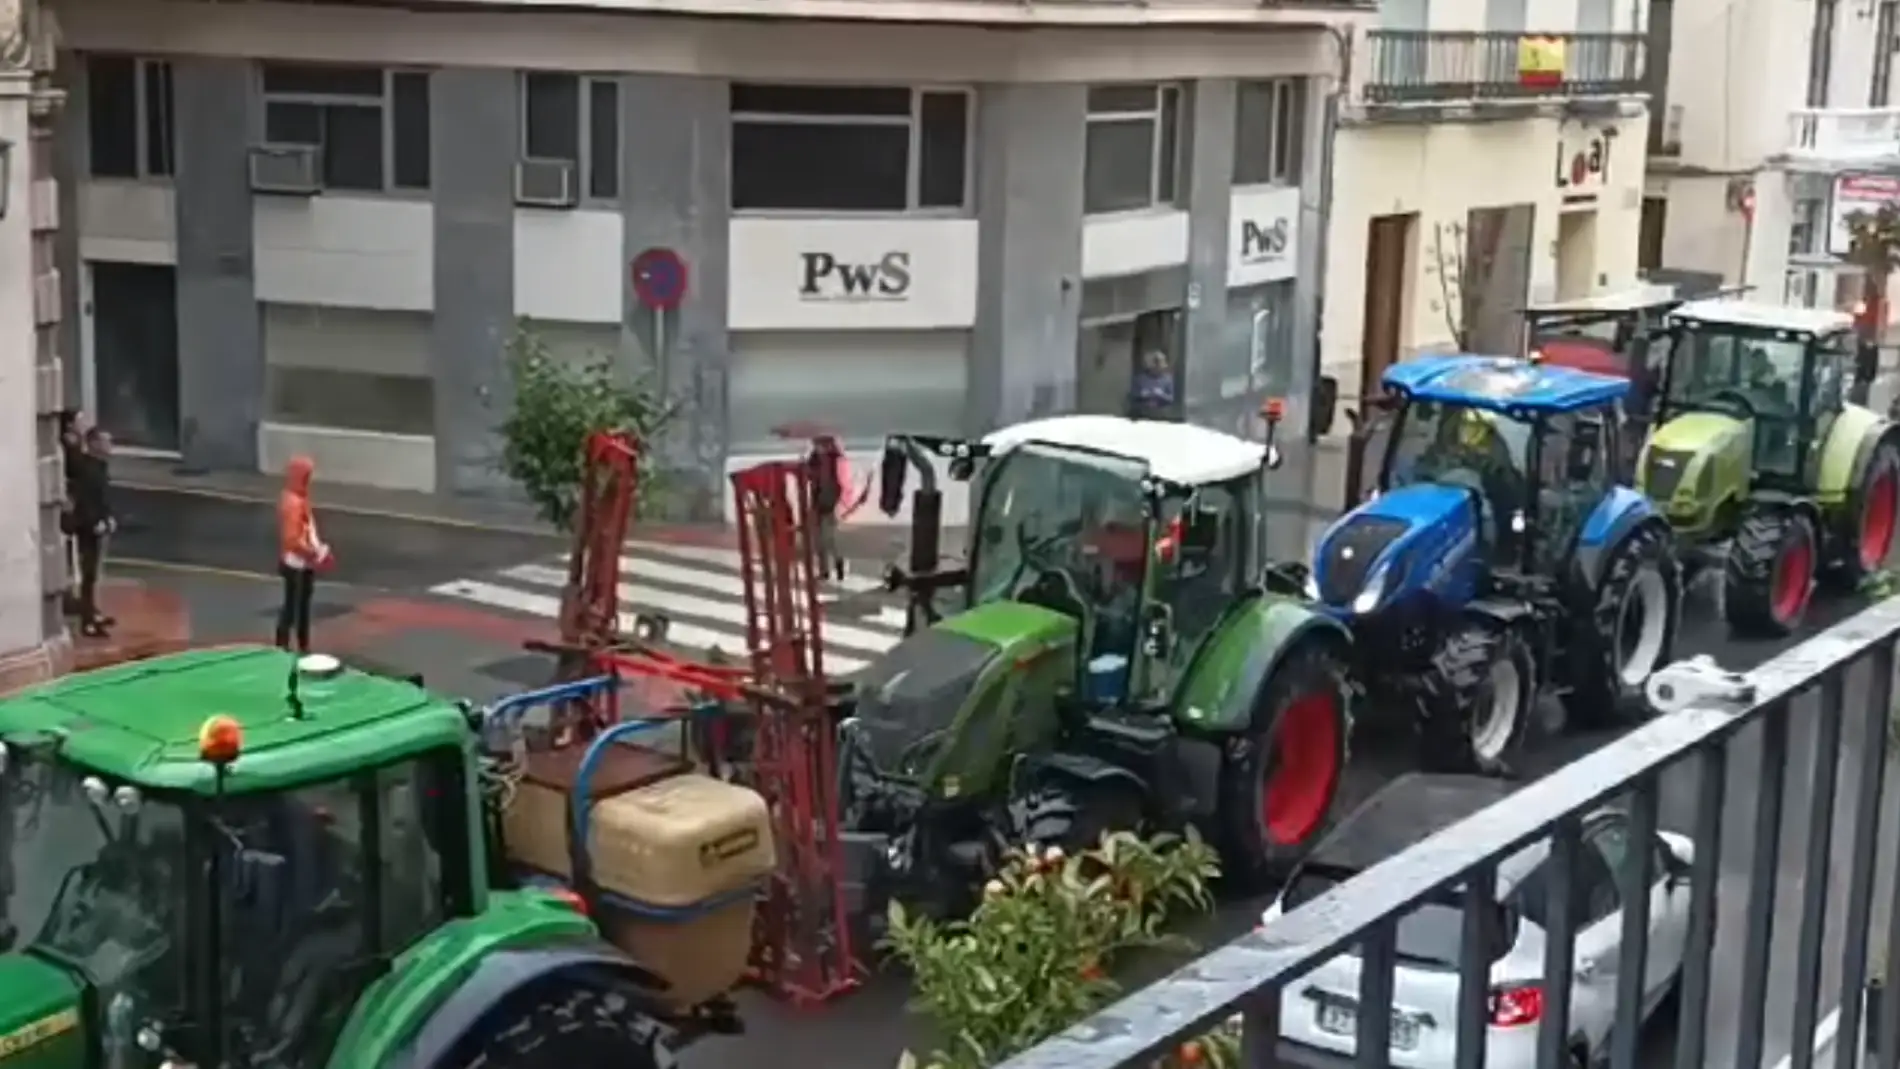 La tractorada llega al centro de Antequera (Málaga)